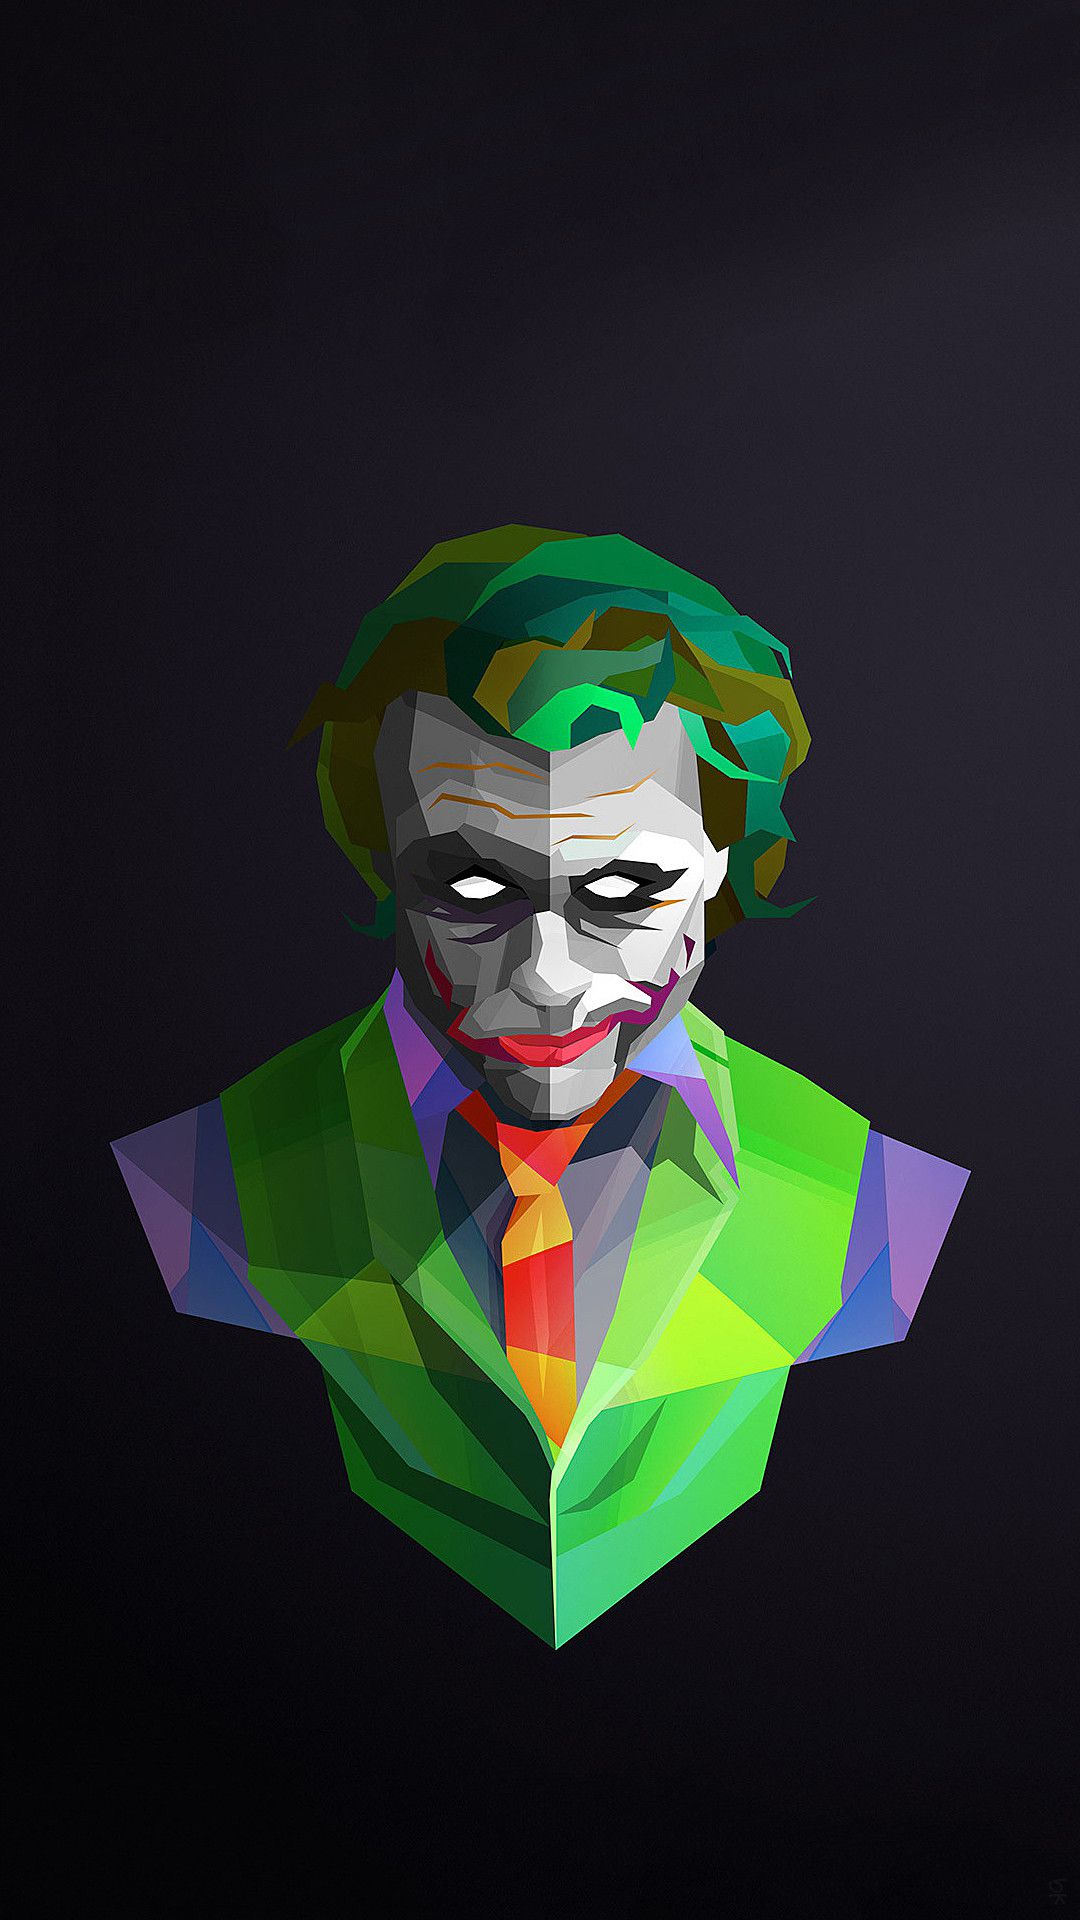 Joker 4K iPhone Wallpaper - iPhone Wallpapers